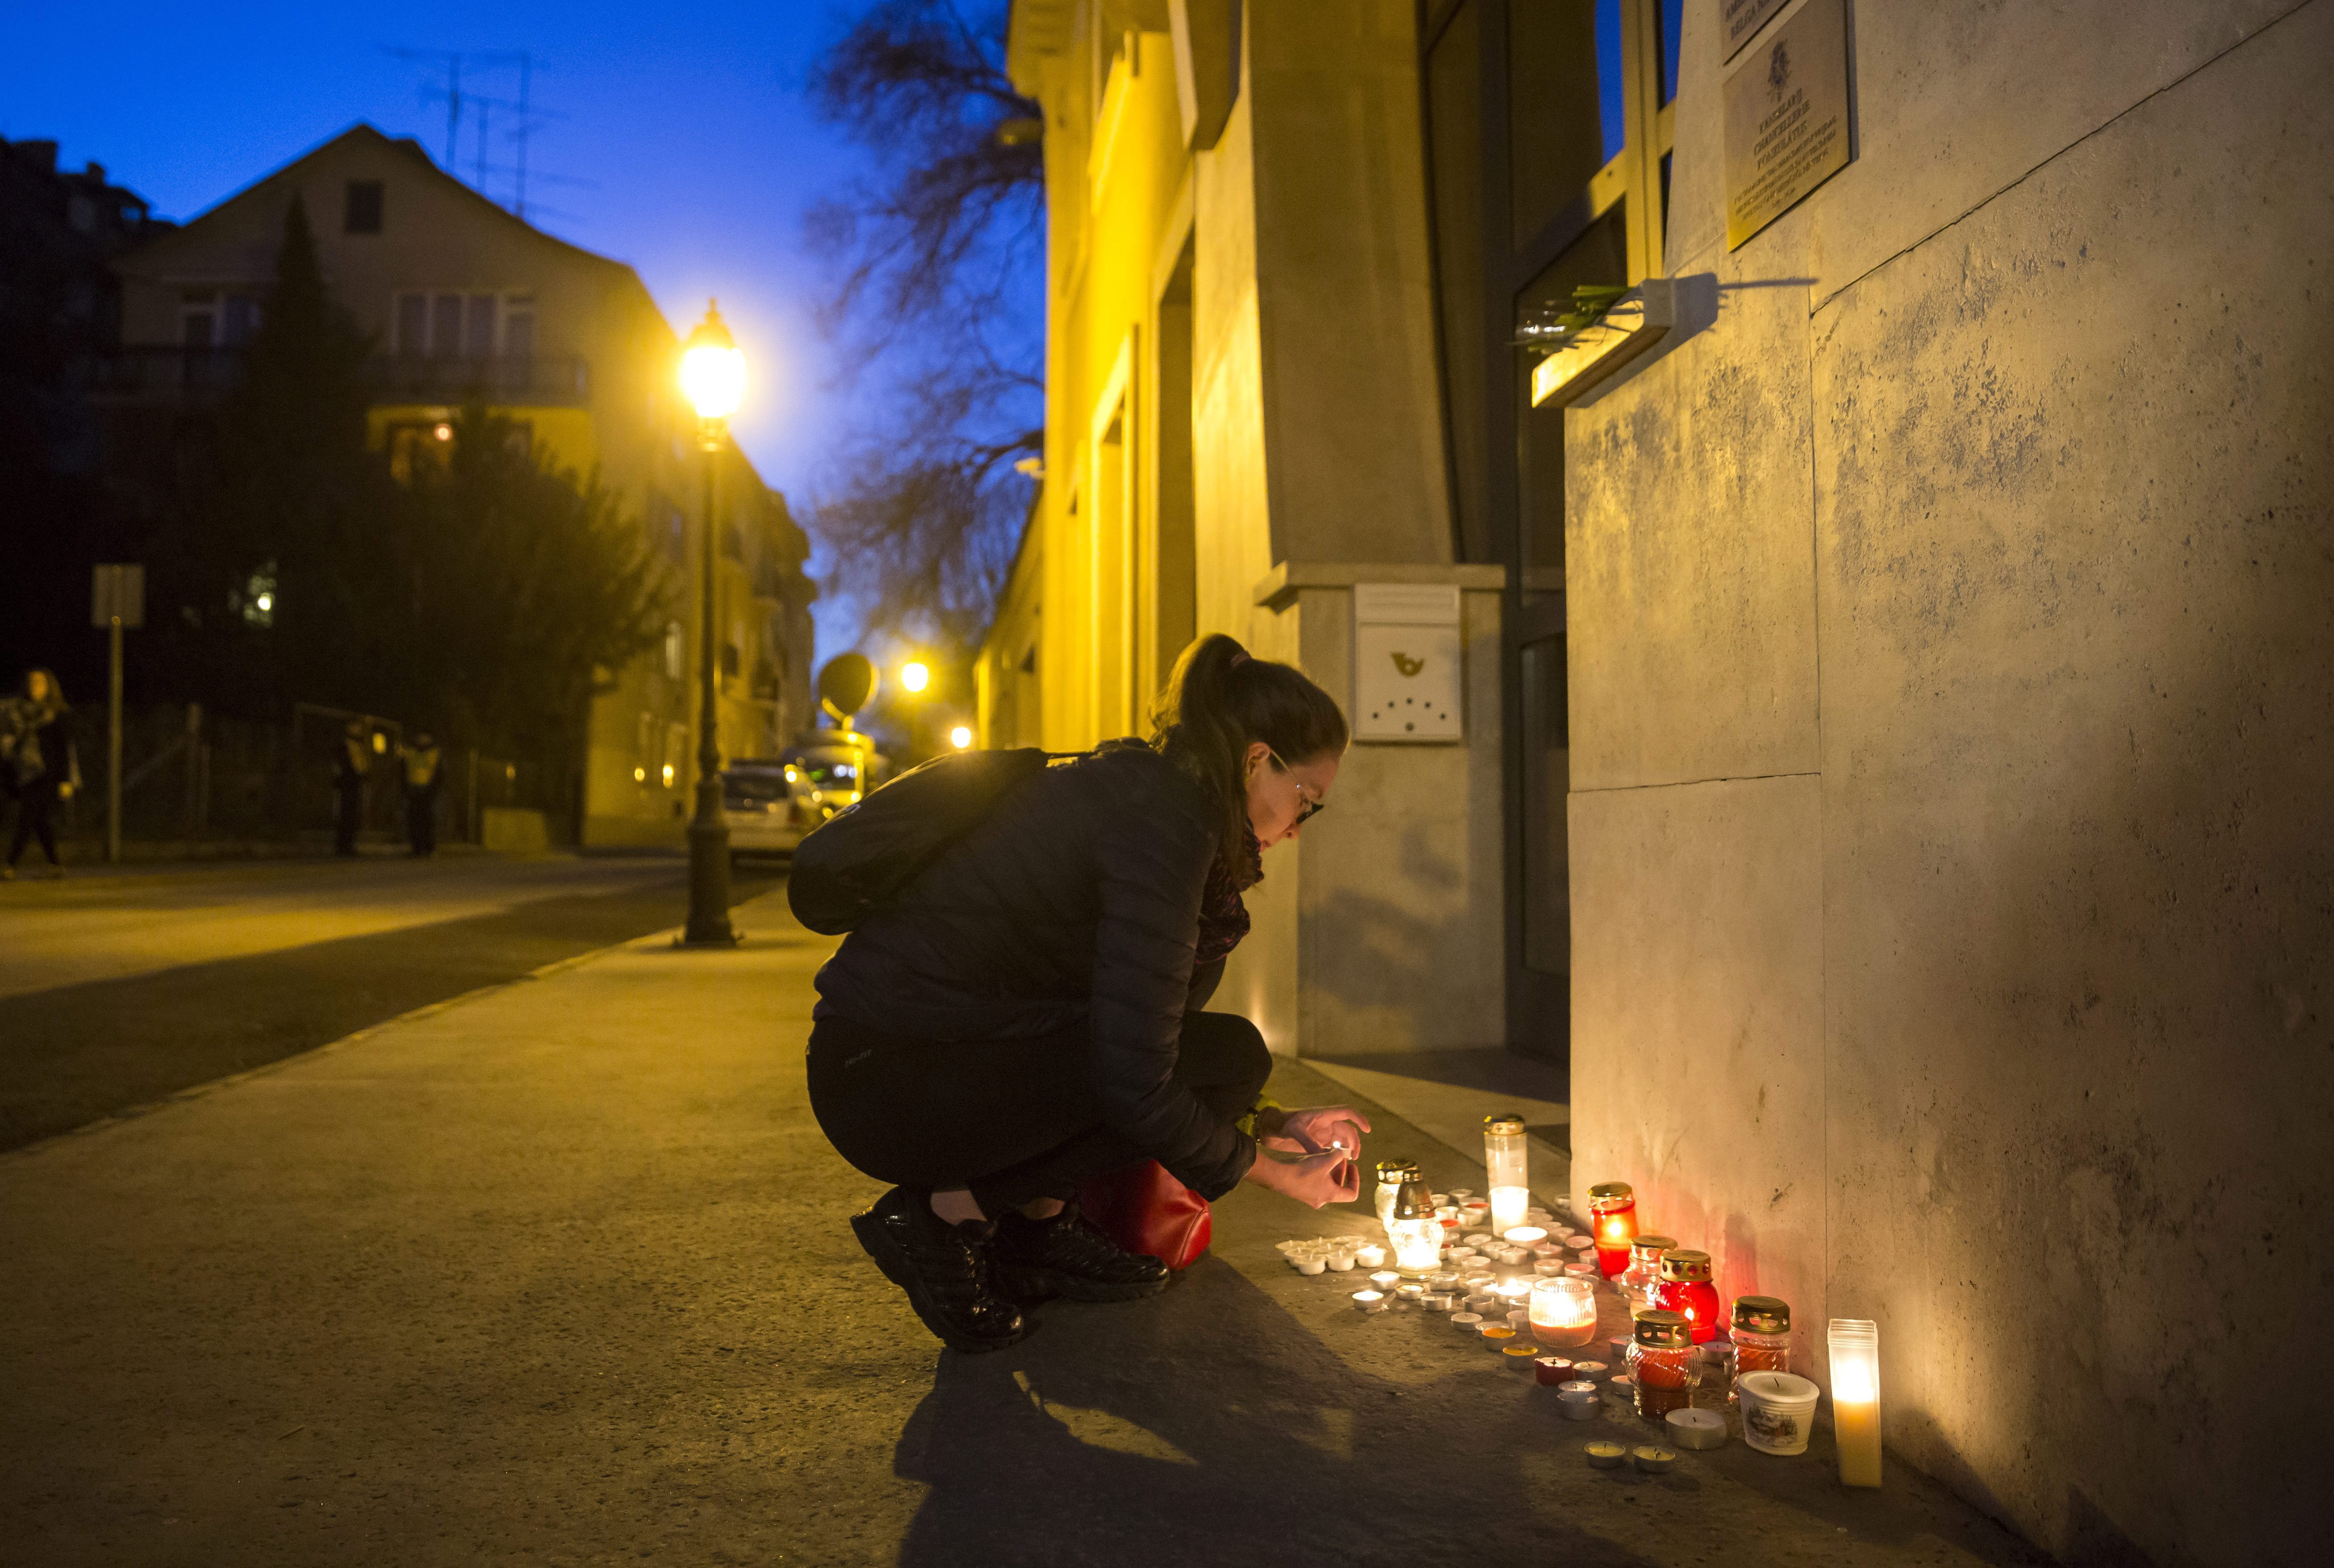 Brüsszeli robbantások: rengeteg halott, 2 magyar is a sérültek között – percről percre